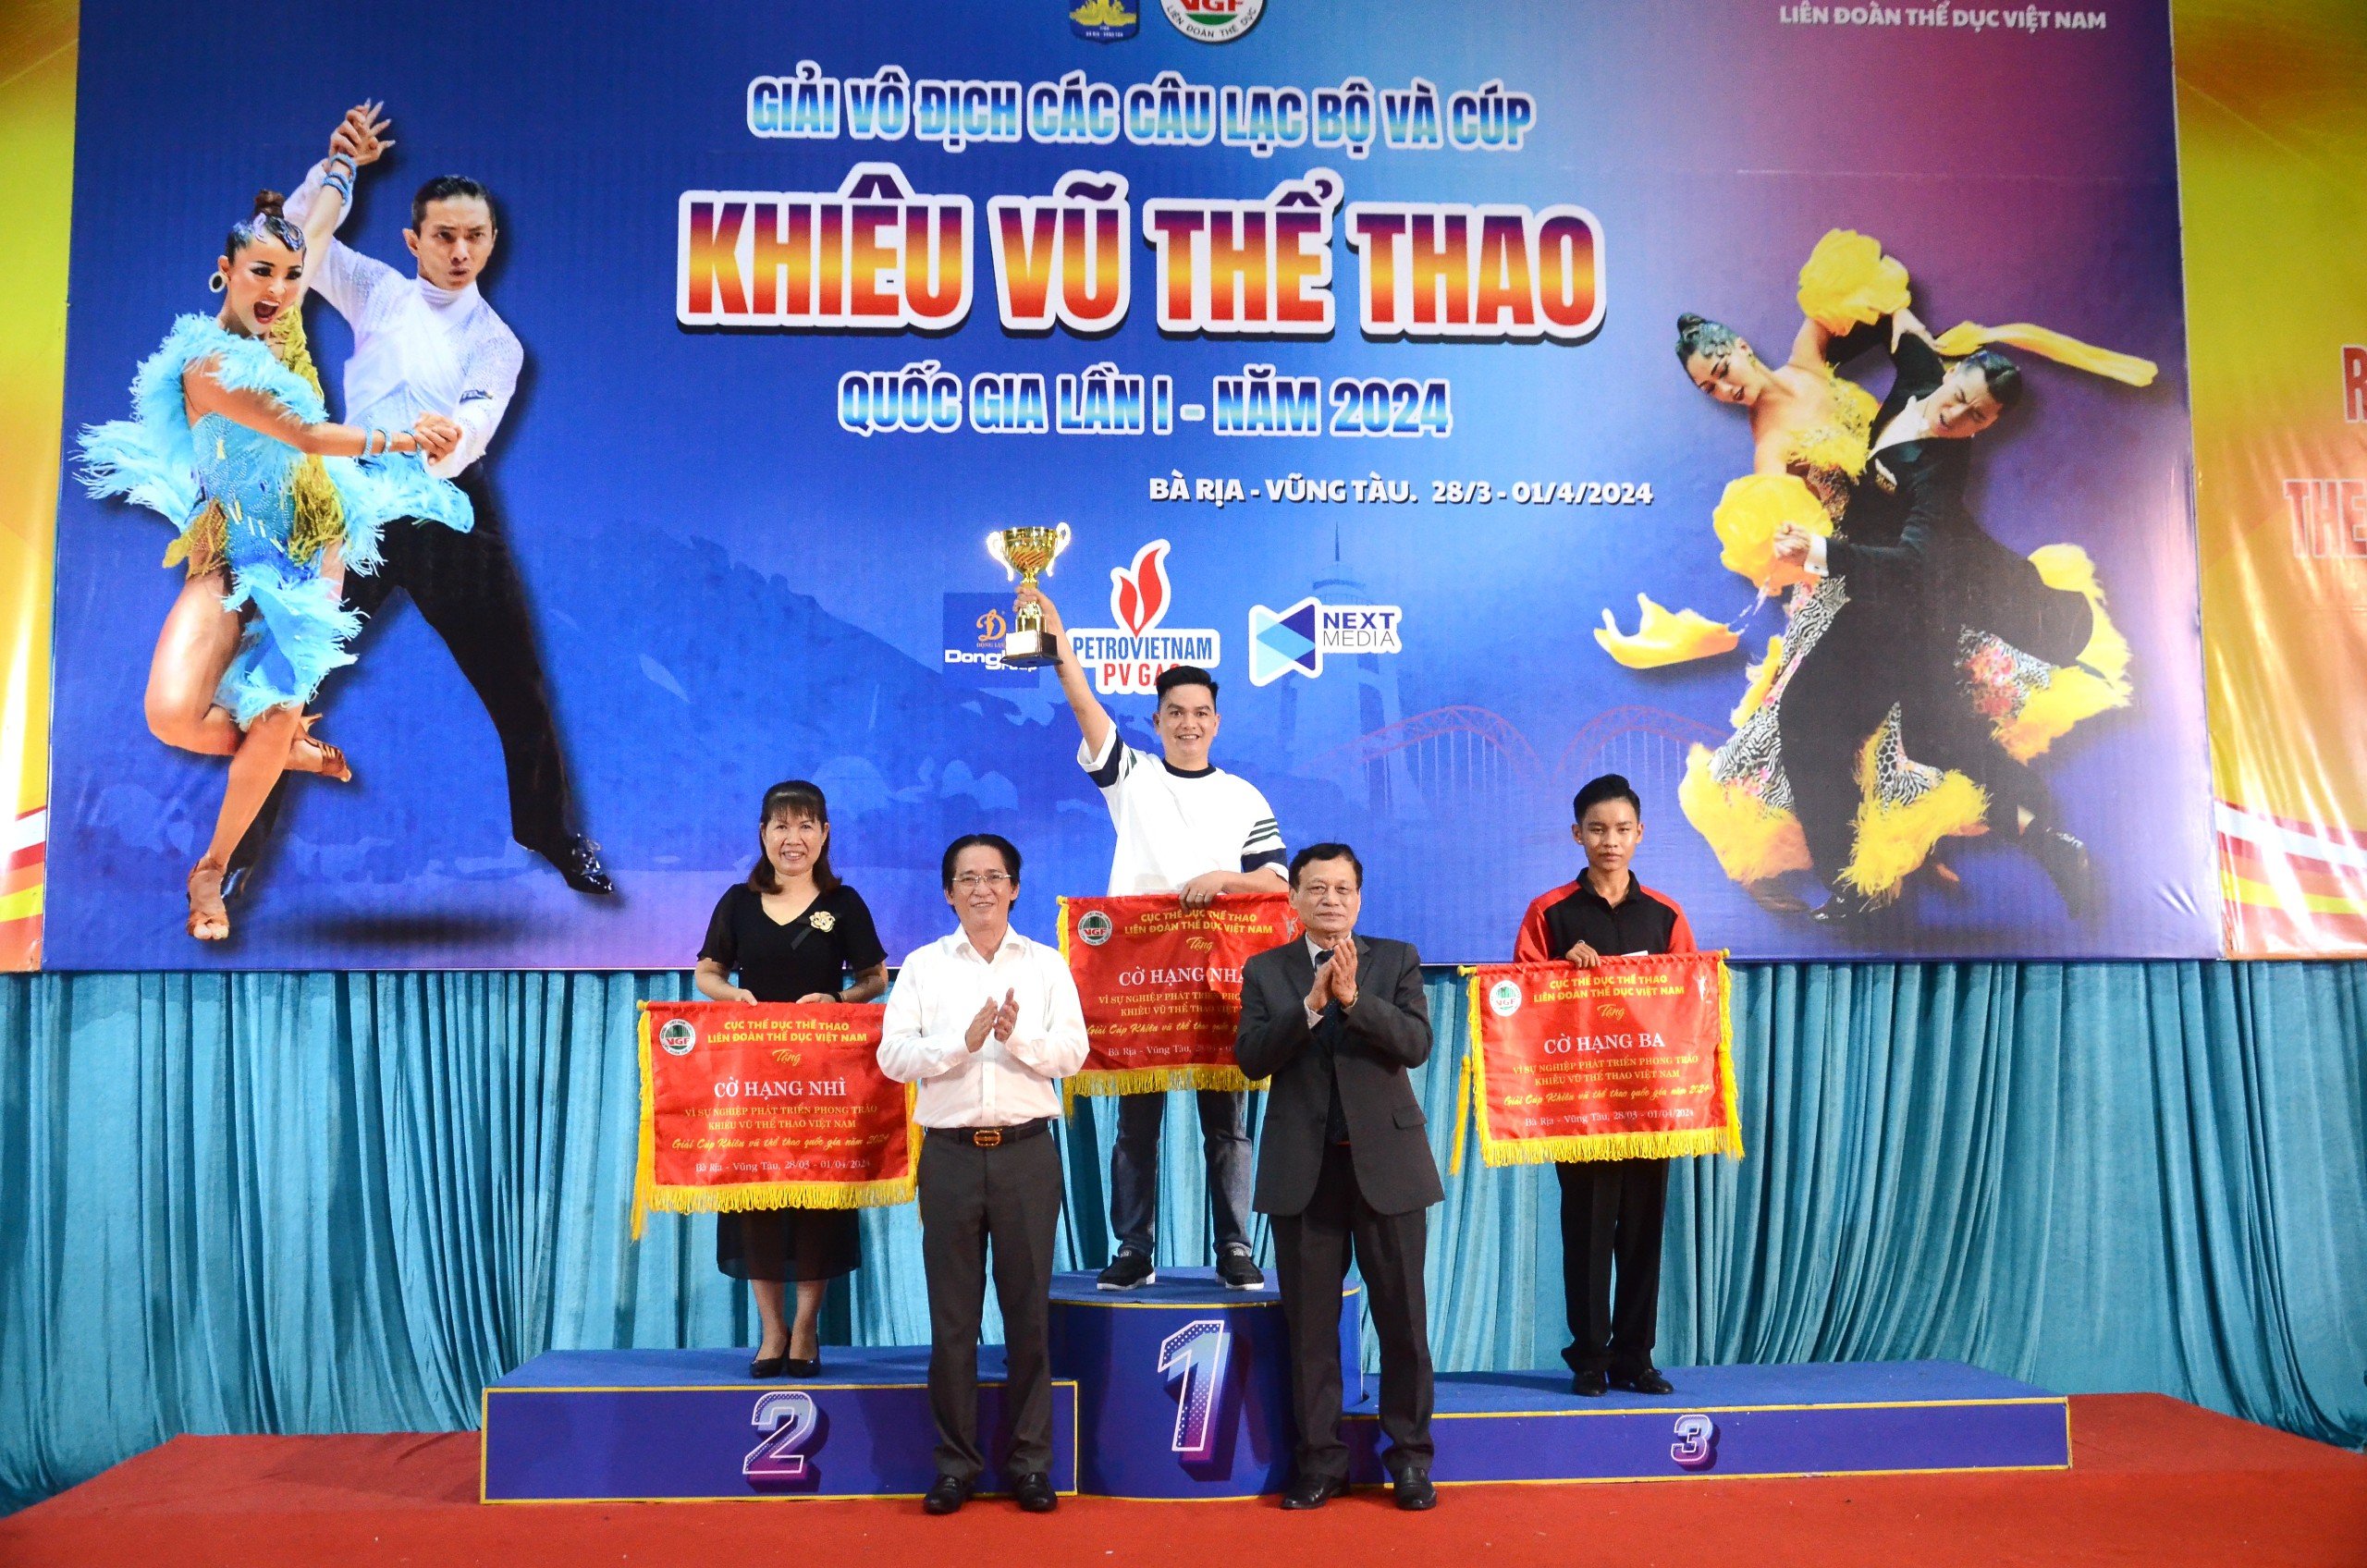 Liên đoàn Thể dục Việt Nam cũng Cúp  và cờ “Vì sự nghiệp phát triển phong trào khiêu vũ thể thao Việt Nam” cho 3 đơn vị. 